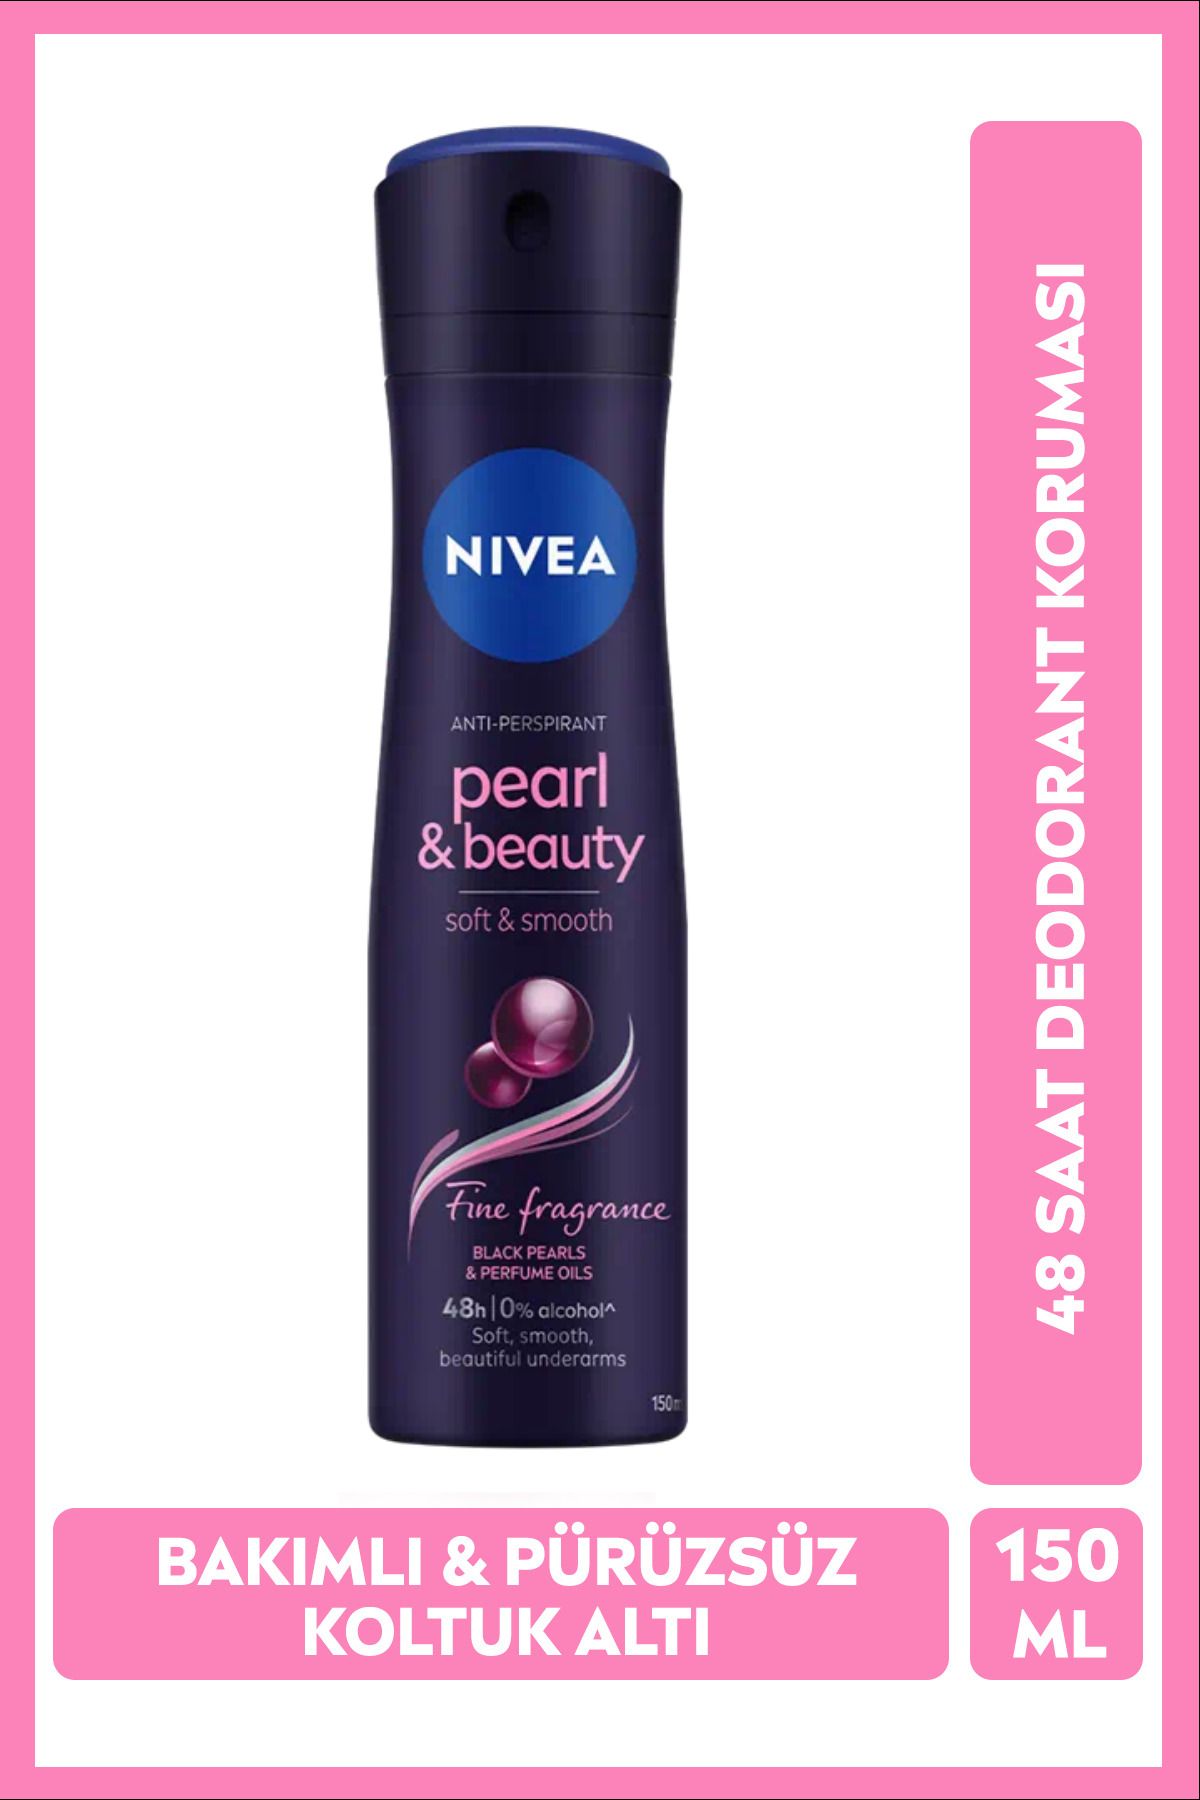 NIVEA Kadın Sprey Deodorant Pearl&Beauty Fine Fragrance 150ml, Ter Kokusuna Karşı 48 Saat Etkili